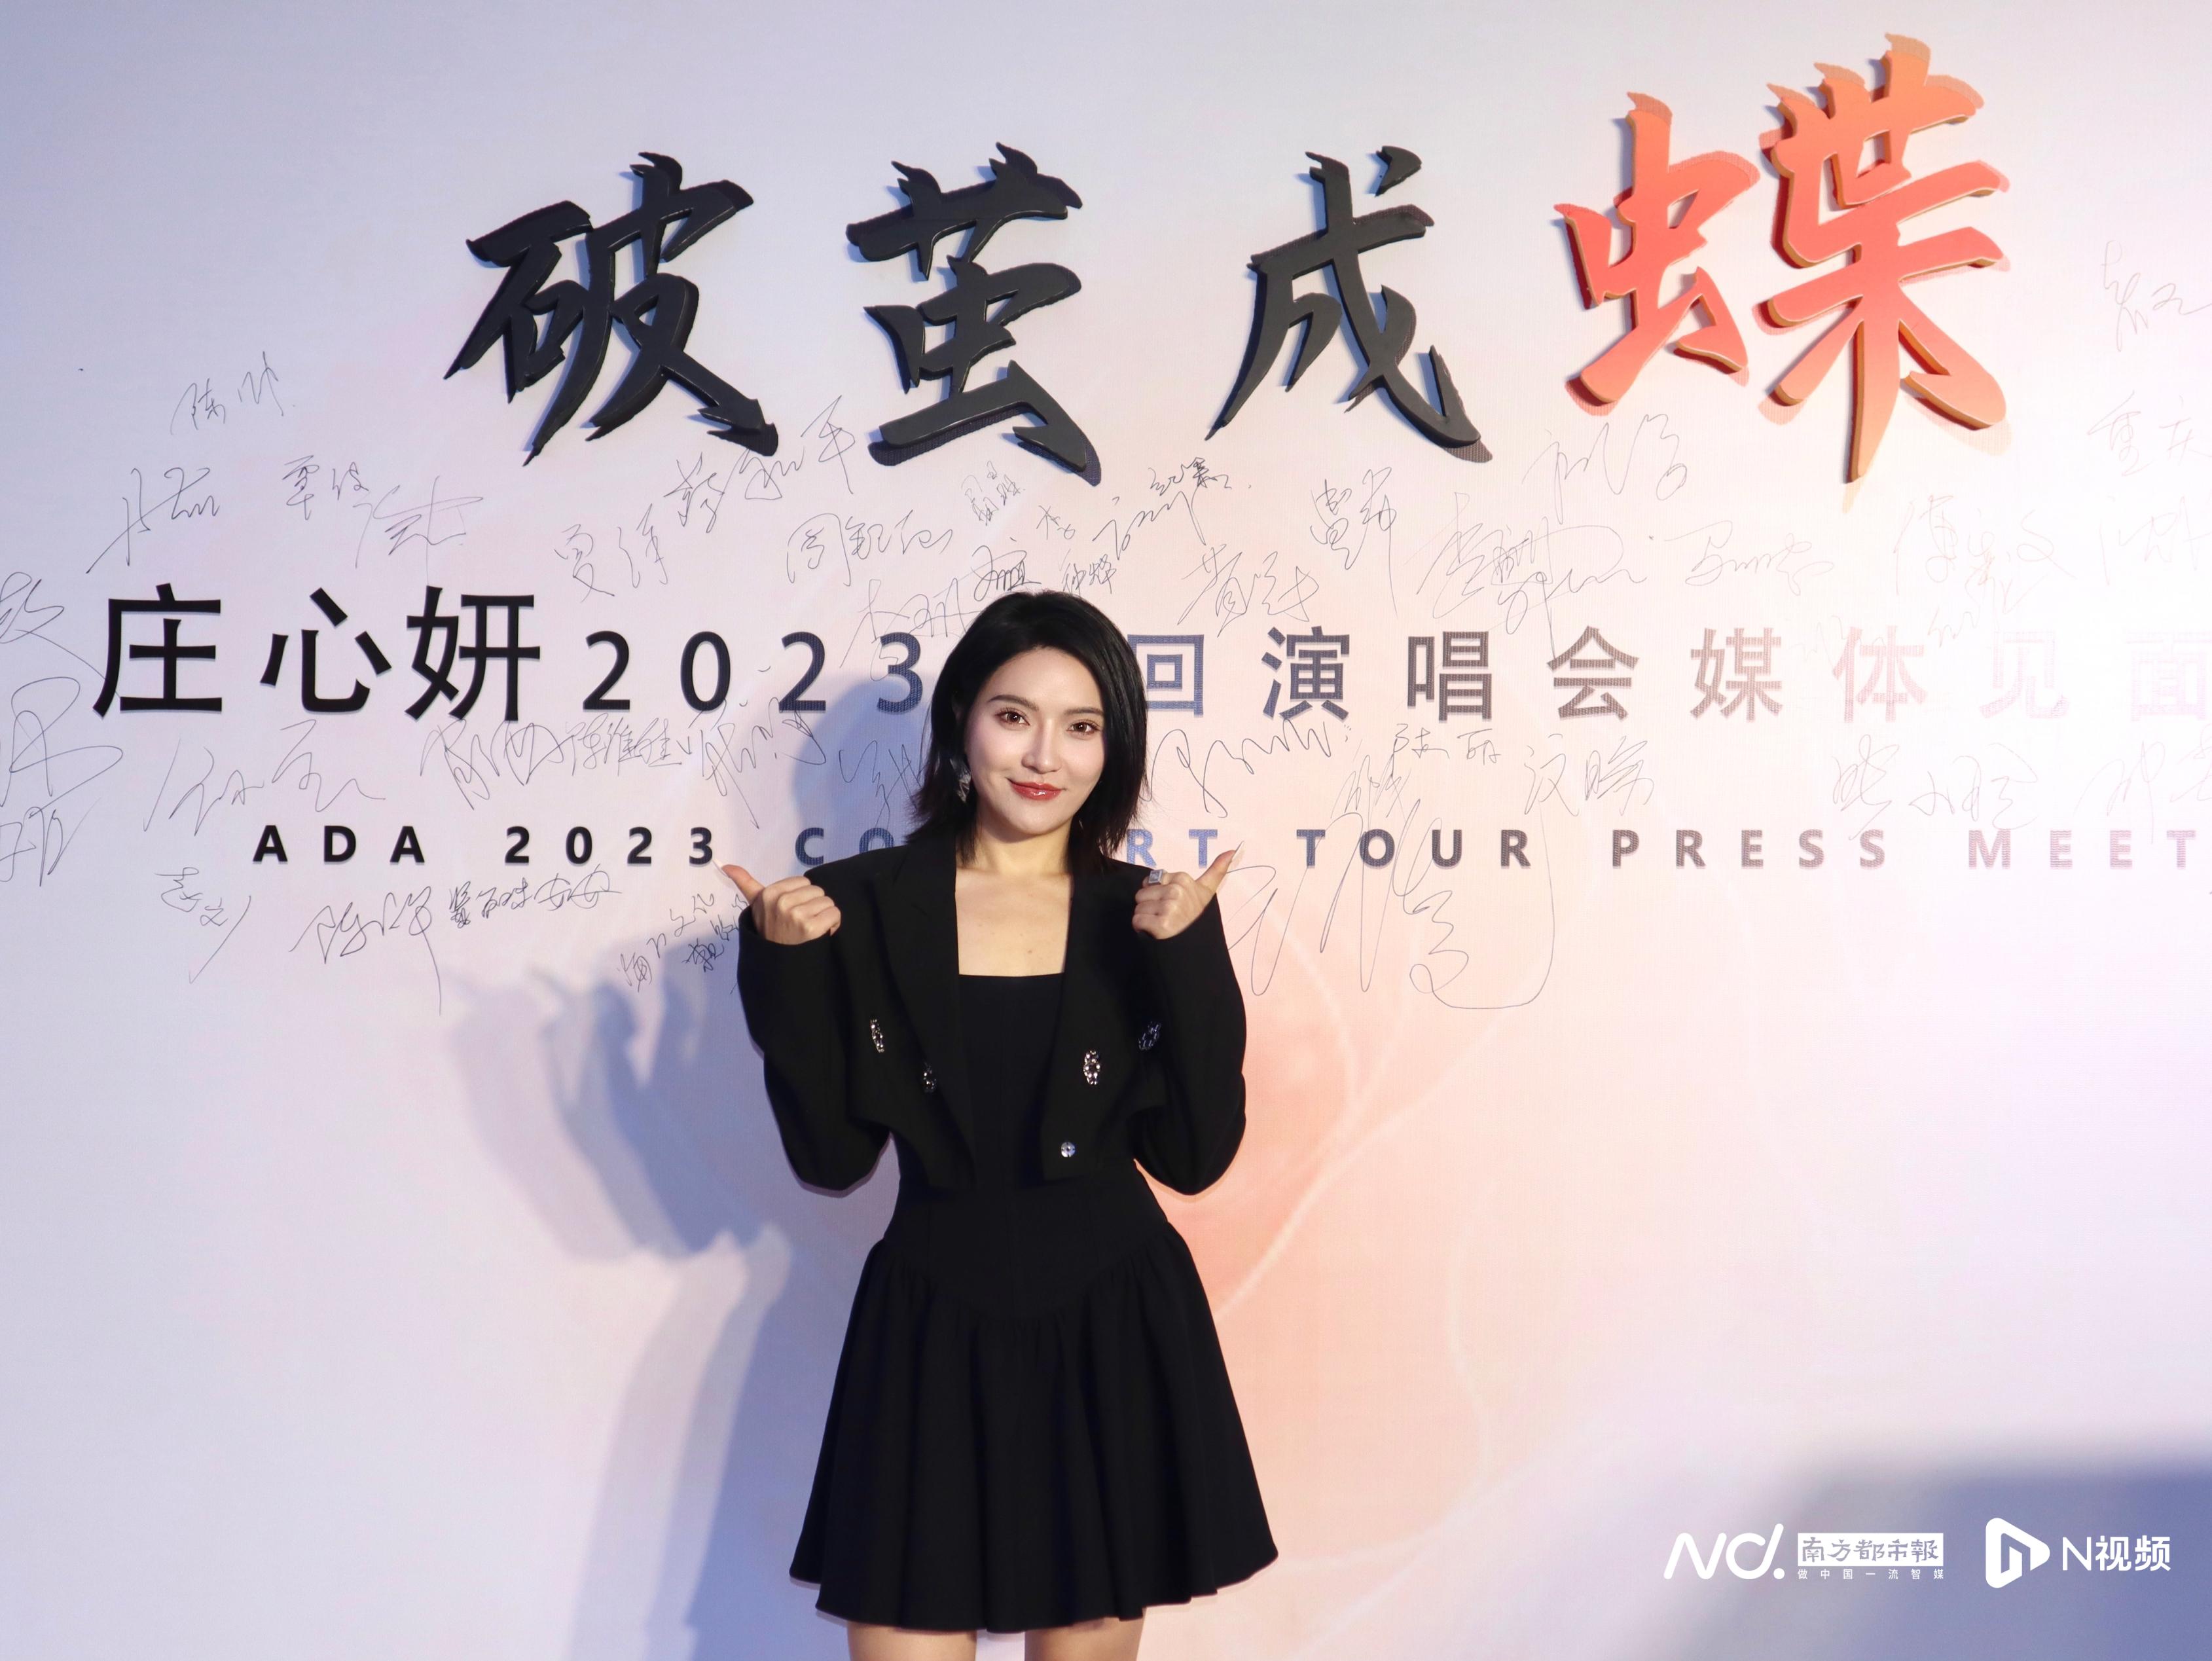 庄心妍2023巡回演唱会11月广州开跑,希望尝试不同曲风